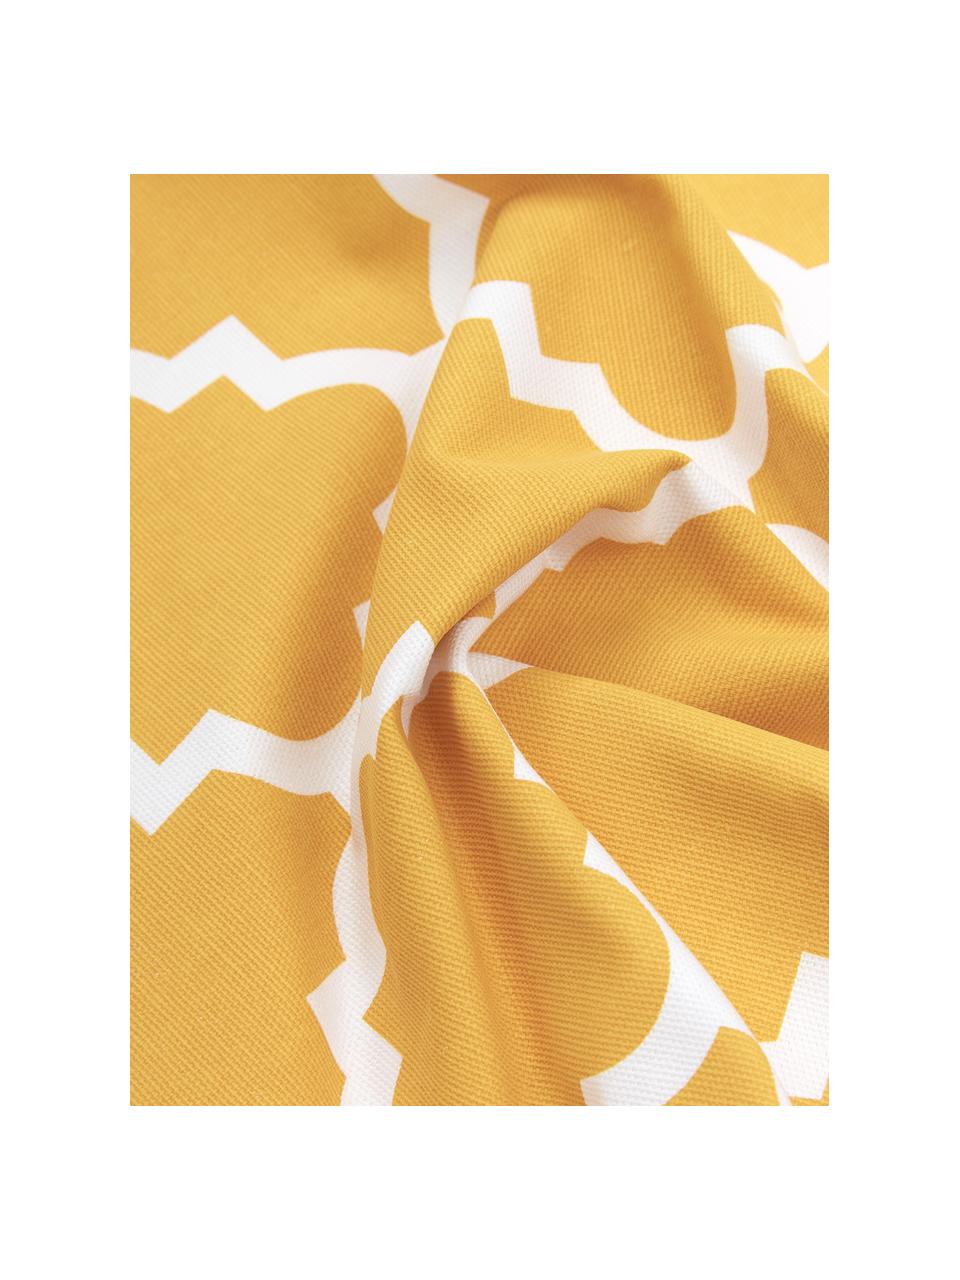 Kissenhülle Lana in Gelb mit grafischem Muster, 100% Baumwolle, Gelb, Weiss, 45 x 45 cm